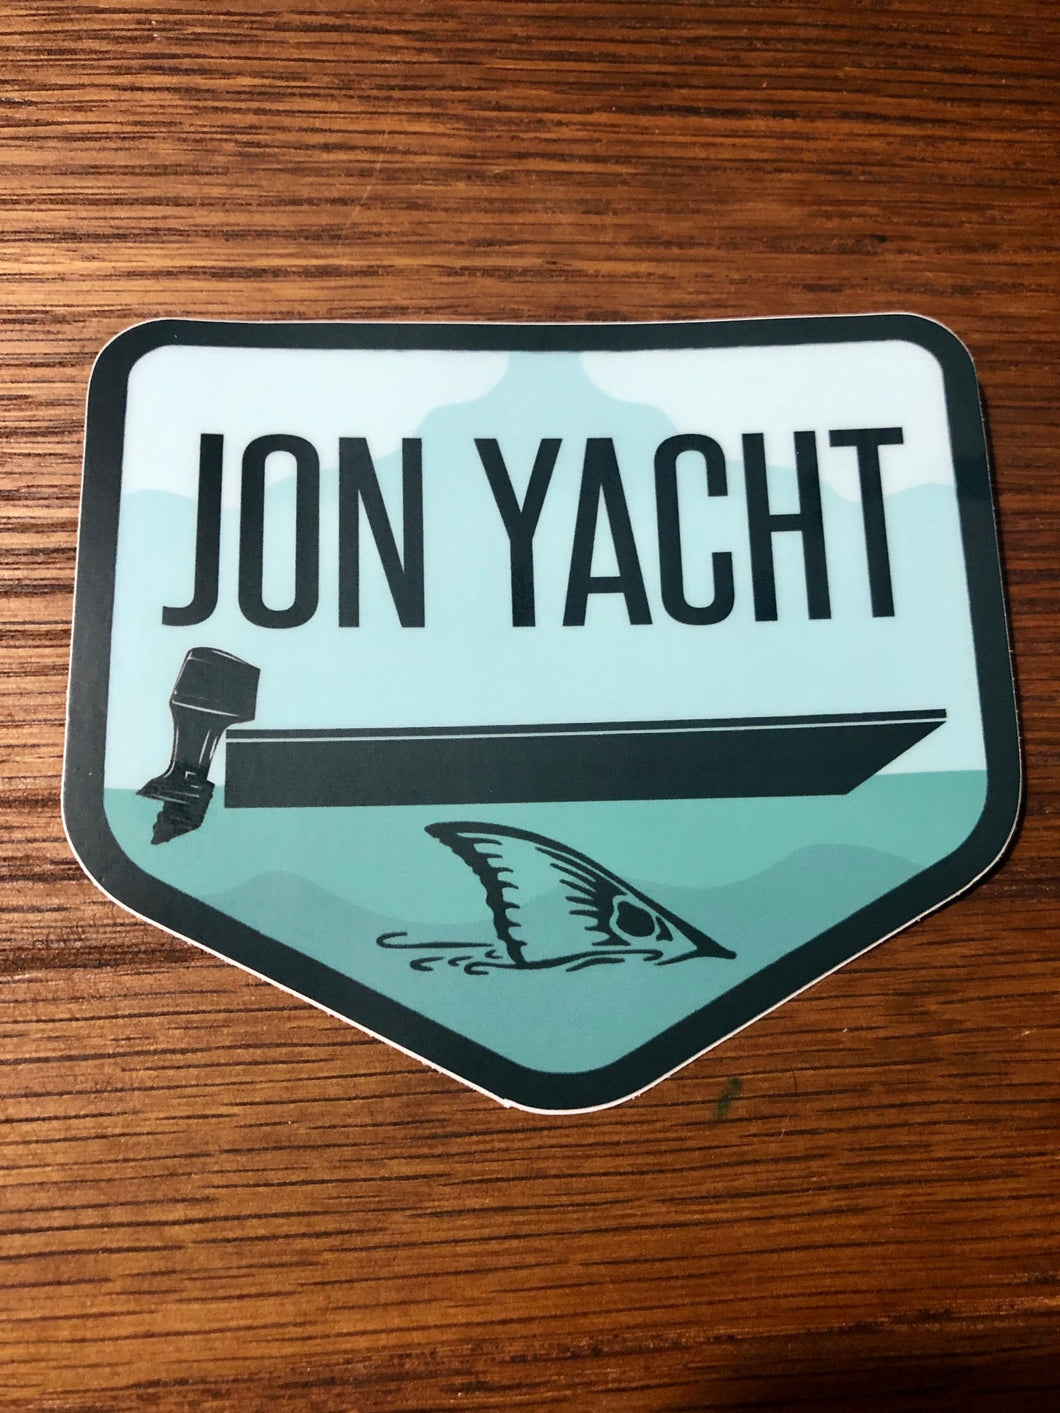 Jon Yacht Tailer sticker 4